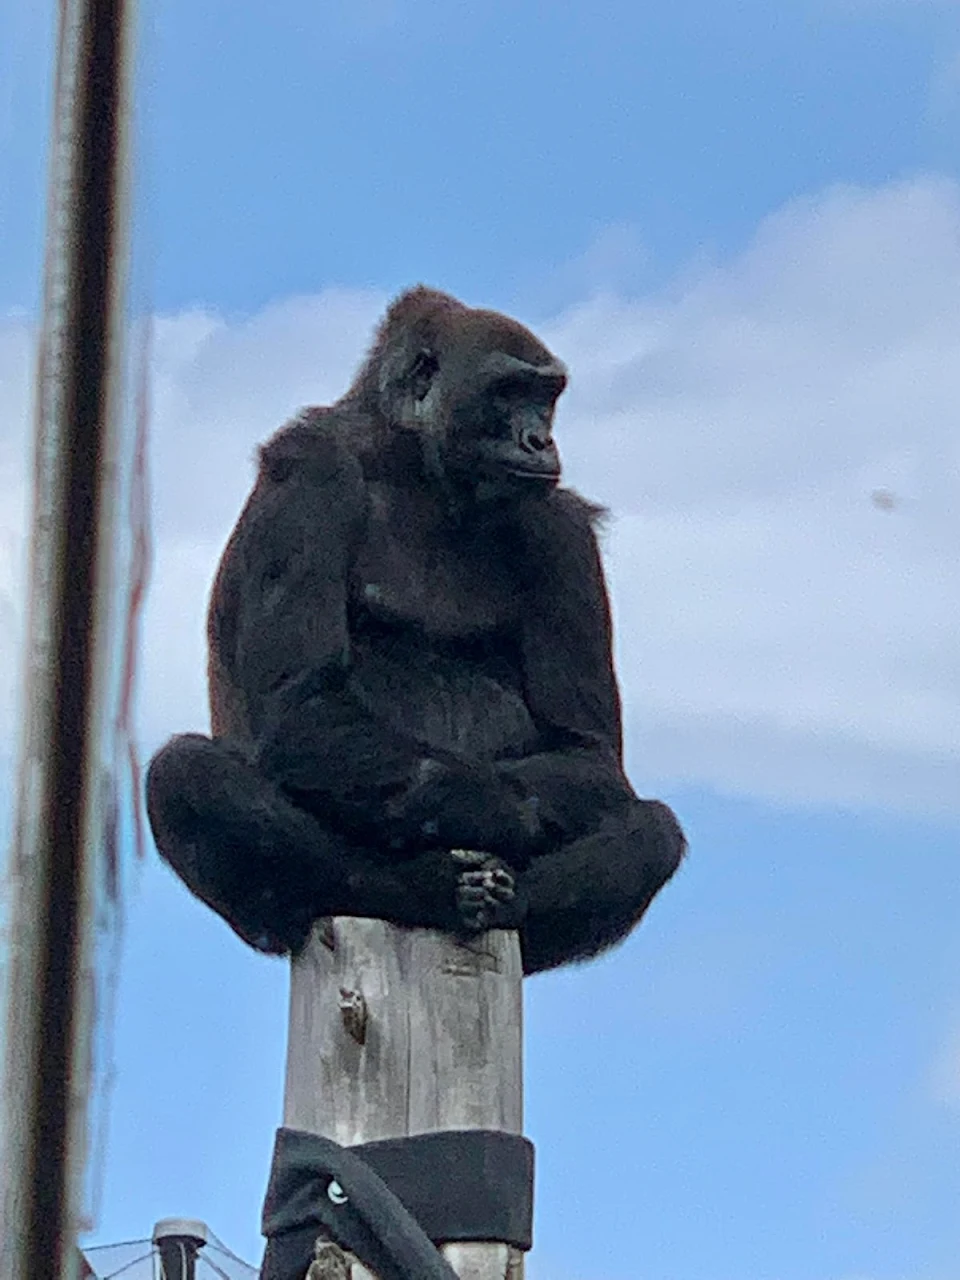 Gorilla on a pole